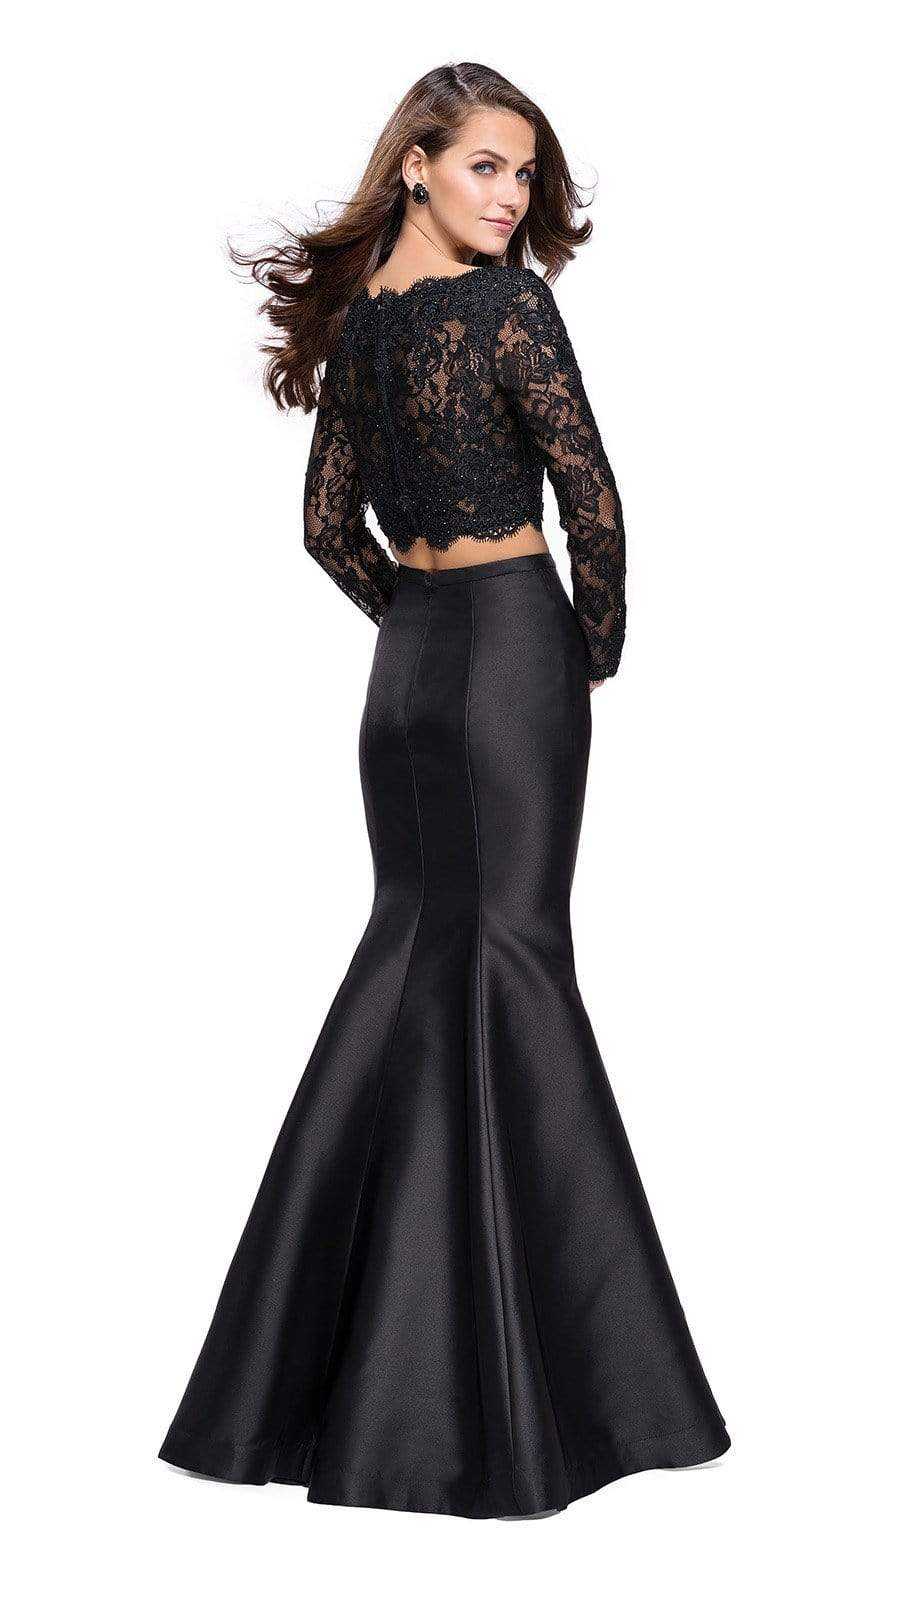 La Femme, La Femme - Two-Piece Long Sleeves Mermaid Dress 25324SC - 1 pc Black In Size 8 Available